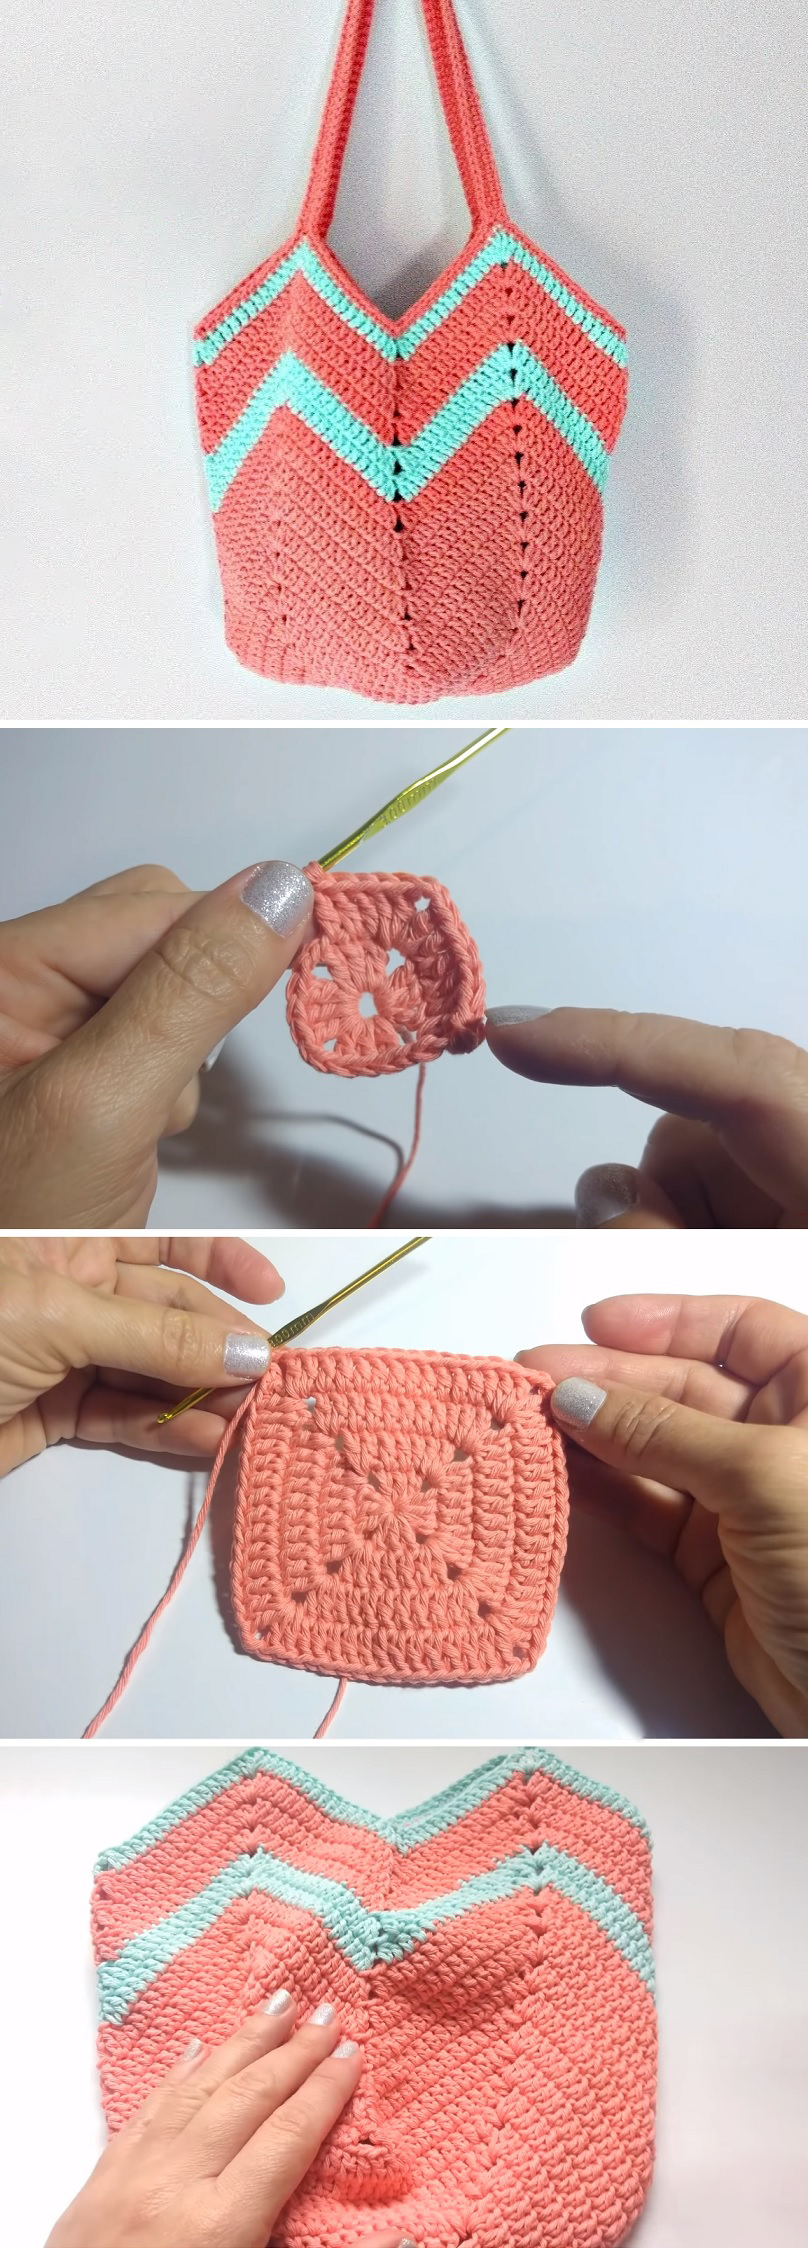 Crochet Handbag – Tutorials & More